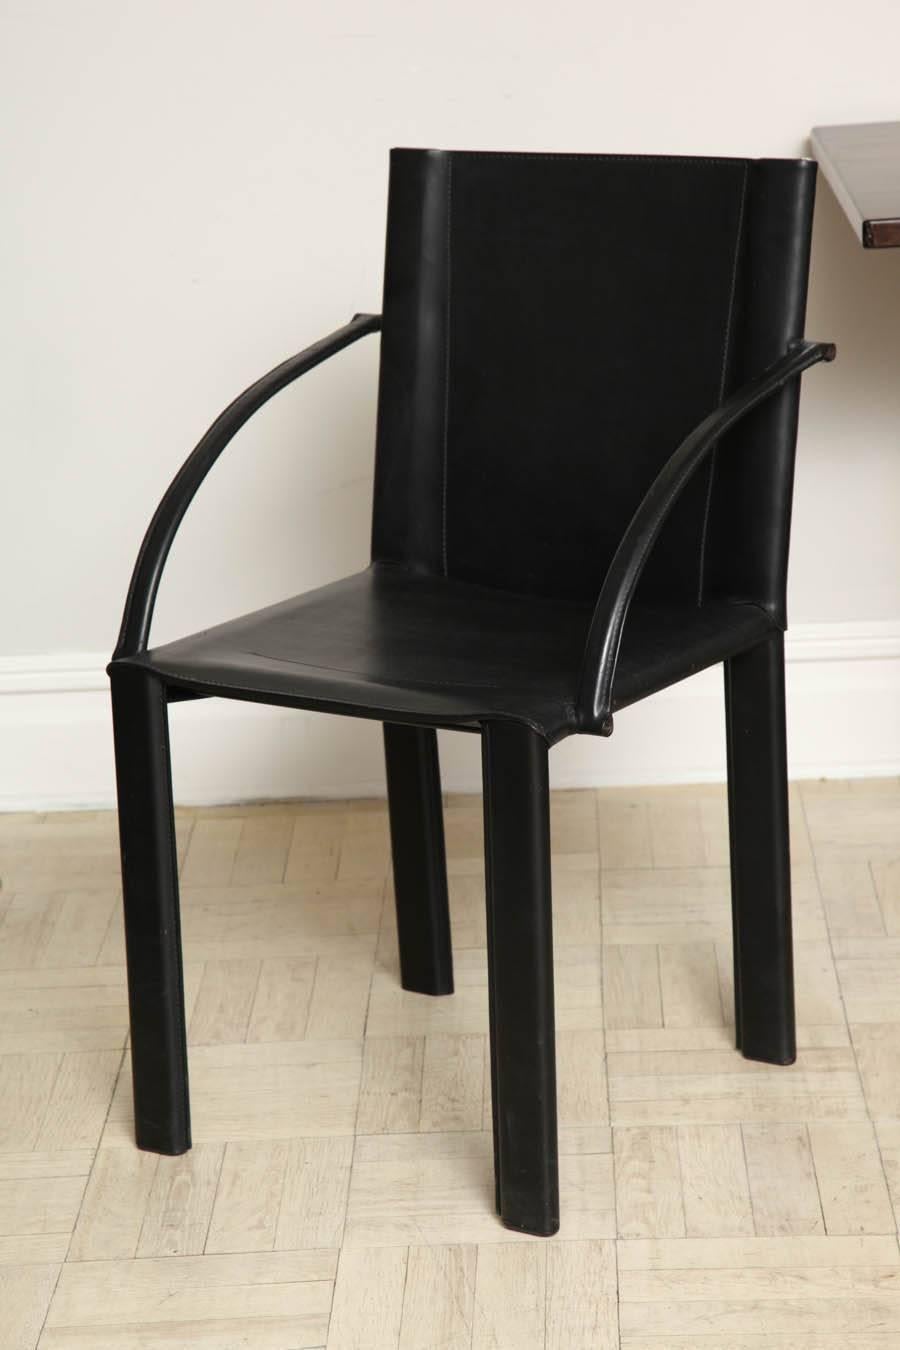 Paire de fauteuils ouverts en cuir noir du milieu du 20e siècle, bras inclinés vers le bas et pieds droits, italiens, vers 1950.